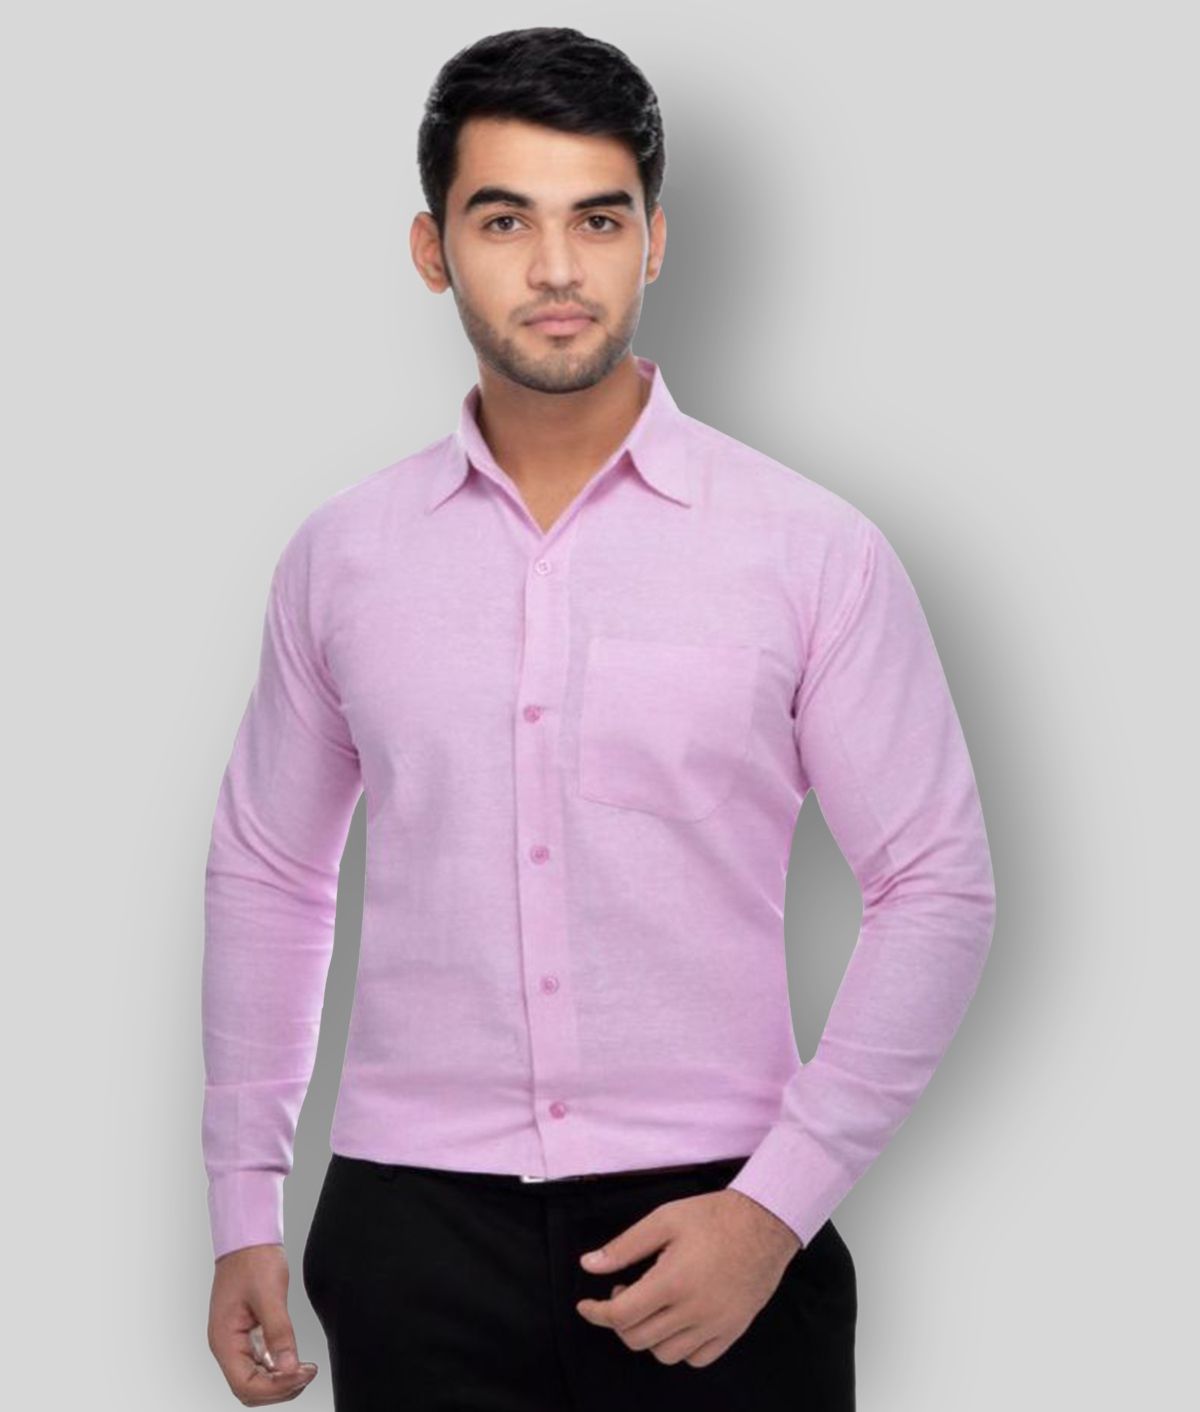     			DESHBANDHU DBK - Pink Cotton Regular Fit Men's Formal Shirt ( Pack of 1 )